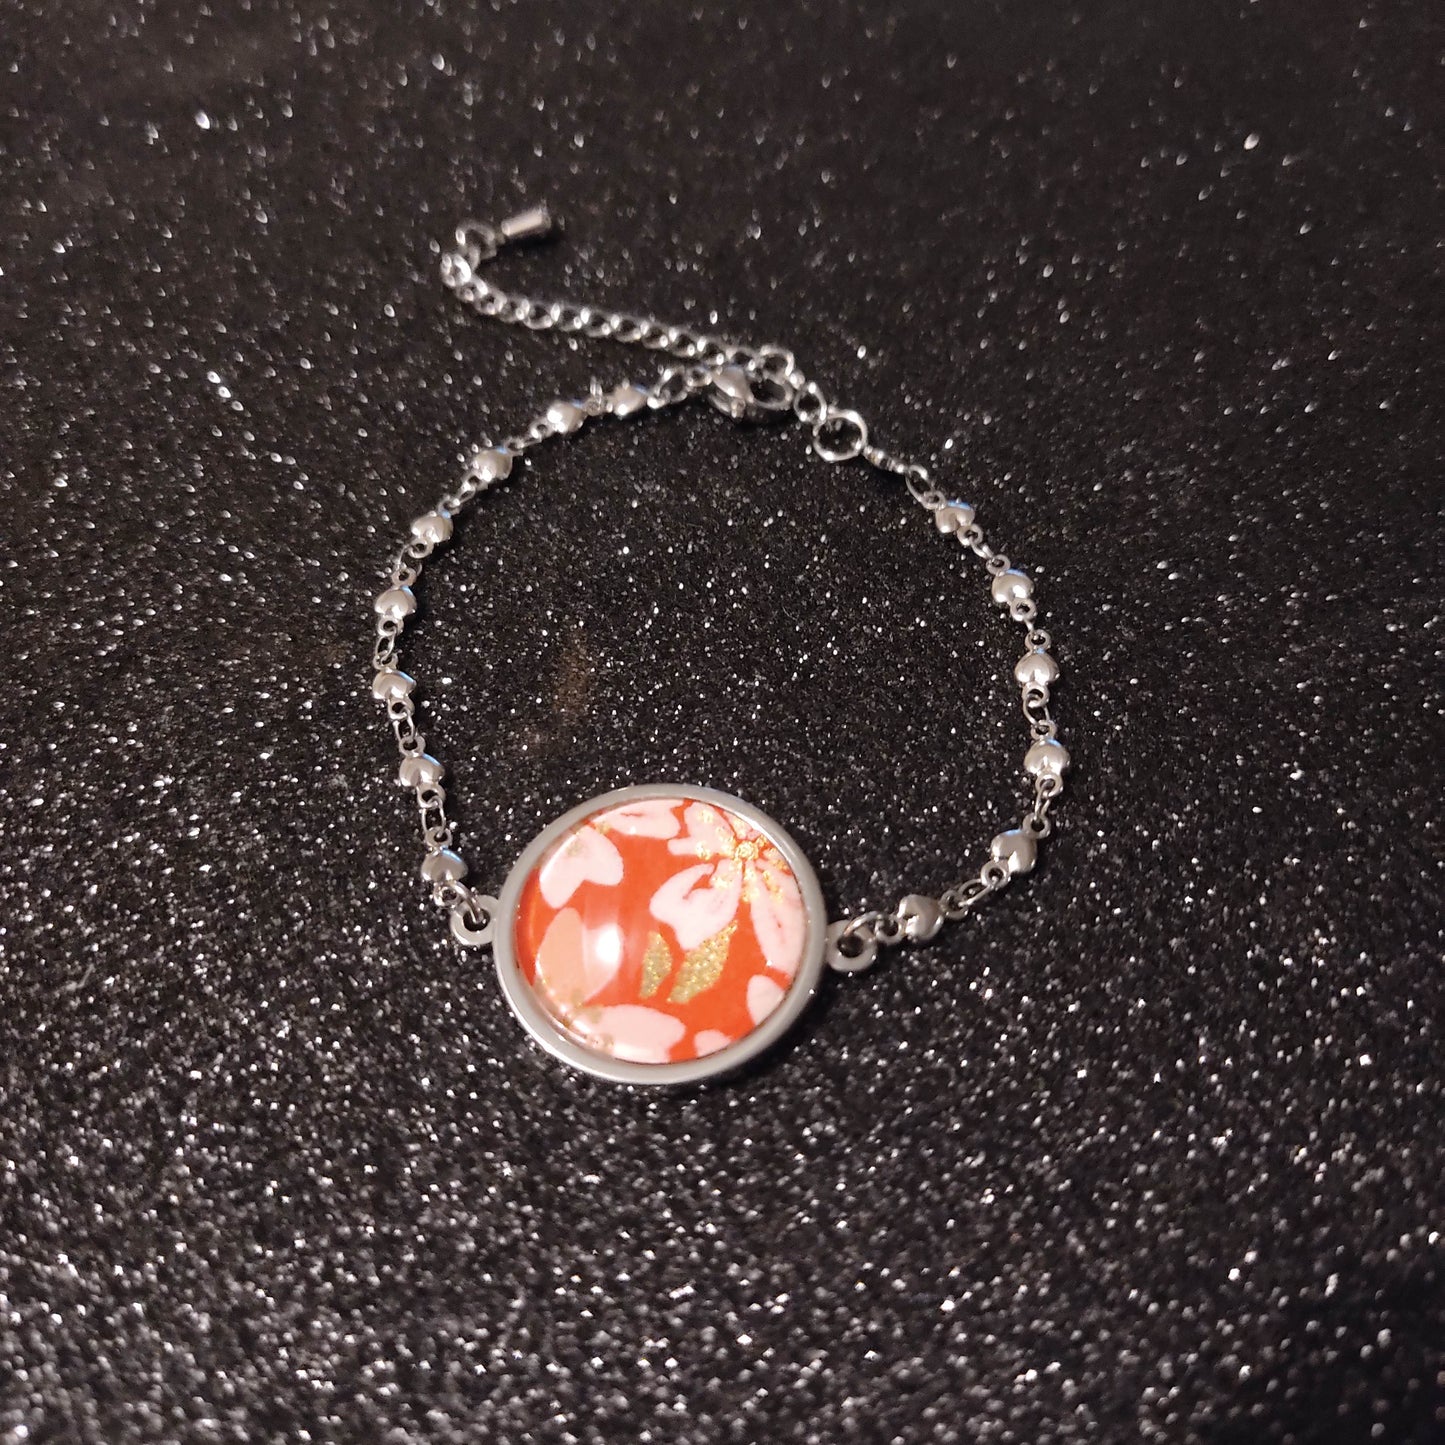 Bracelet chainette acier inoxydable - 20mm - Papier japonais fleurs roses blanches corail - rouge